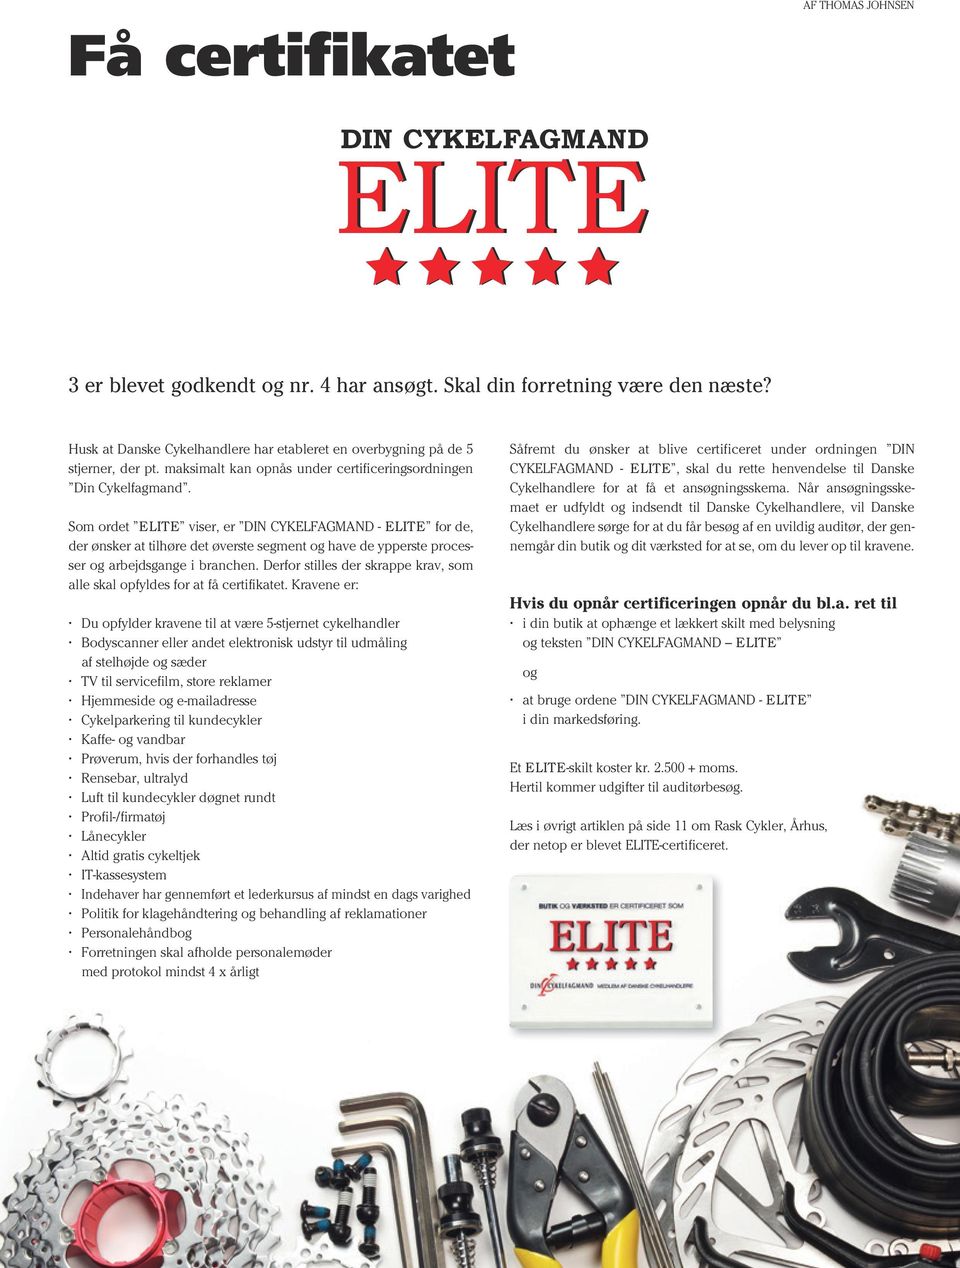 Som ordet ELITE viser, er DIN CYKELFAGMAND - ELITE for de, der ønsker at tilhøre det øverste segment og have de ypperste processer og arbejdsgange i branchen.